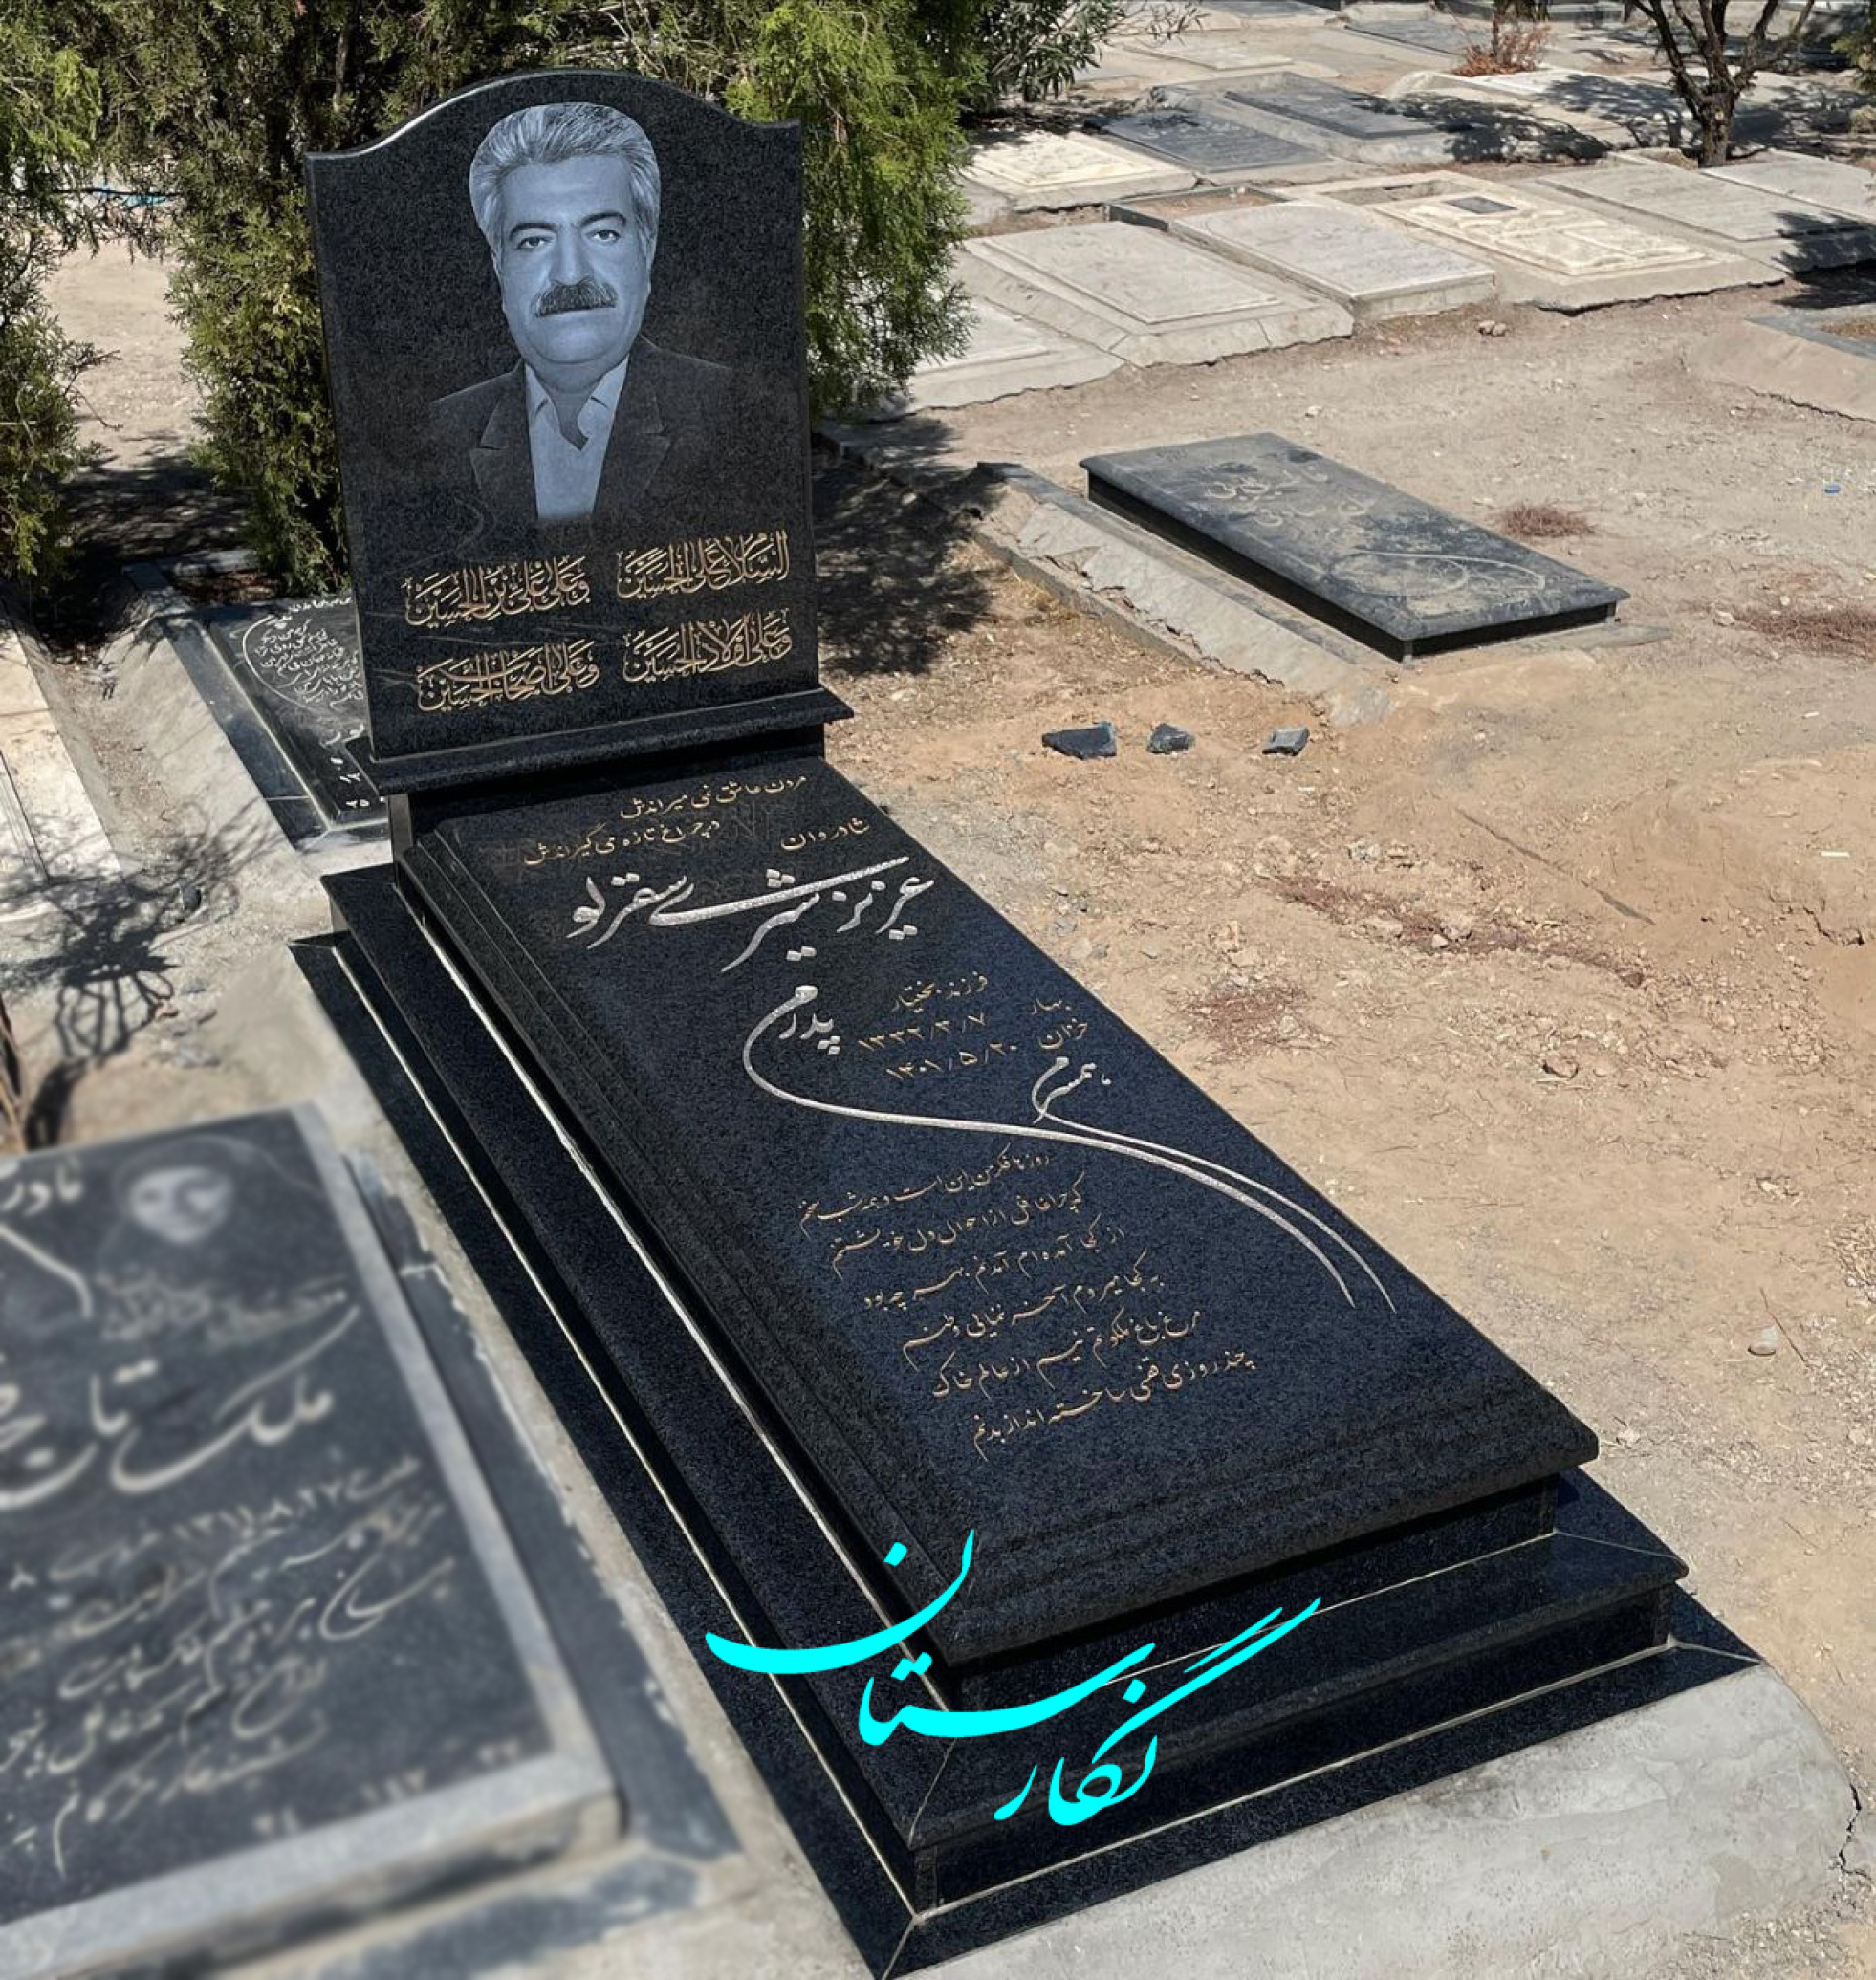  سنگ قبر گرانیت سیمین اصفهان لاکچری کد 210| فروشگاه سنگ مزار نگارستان 